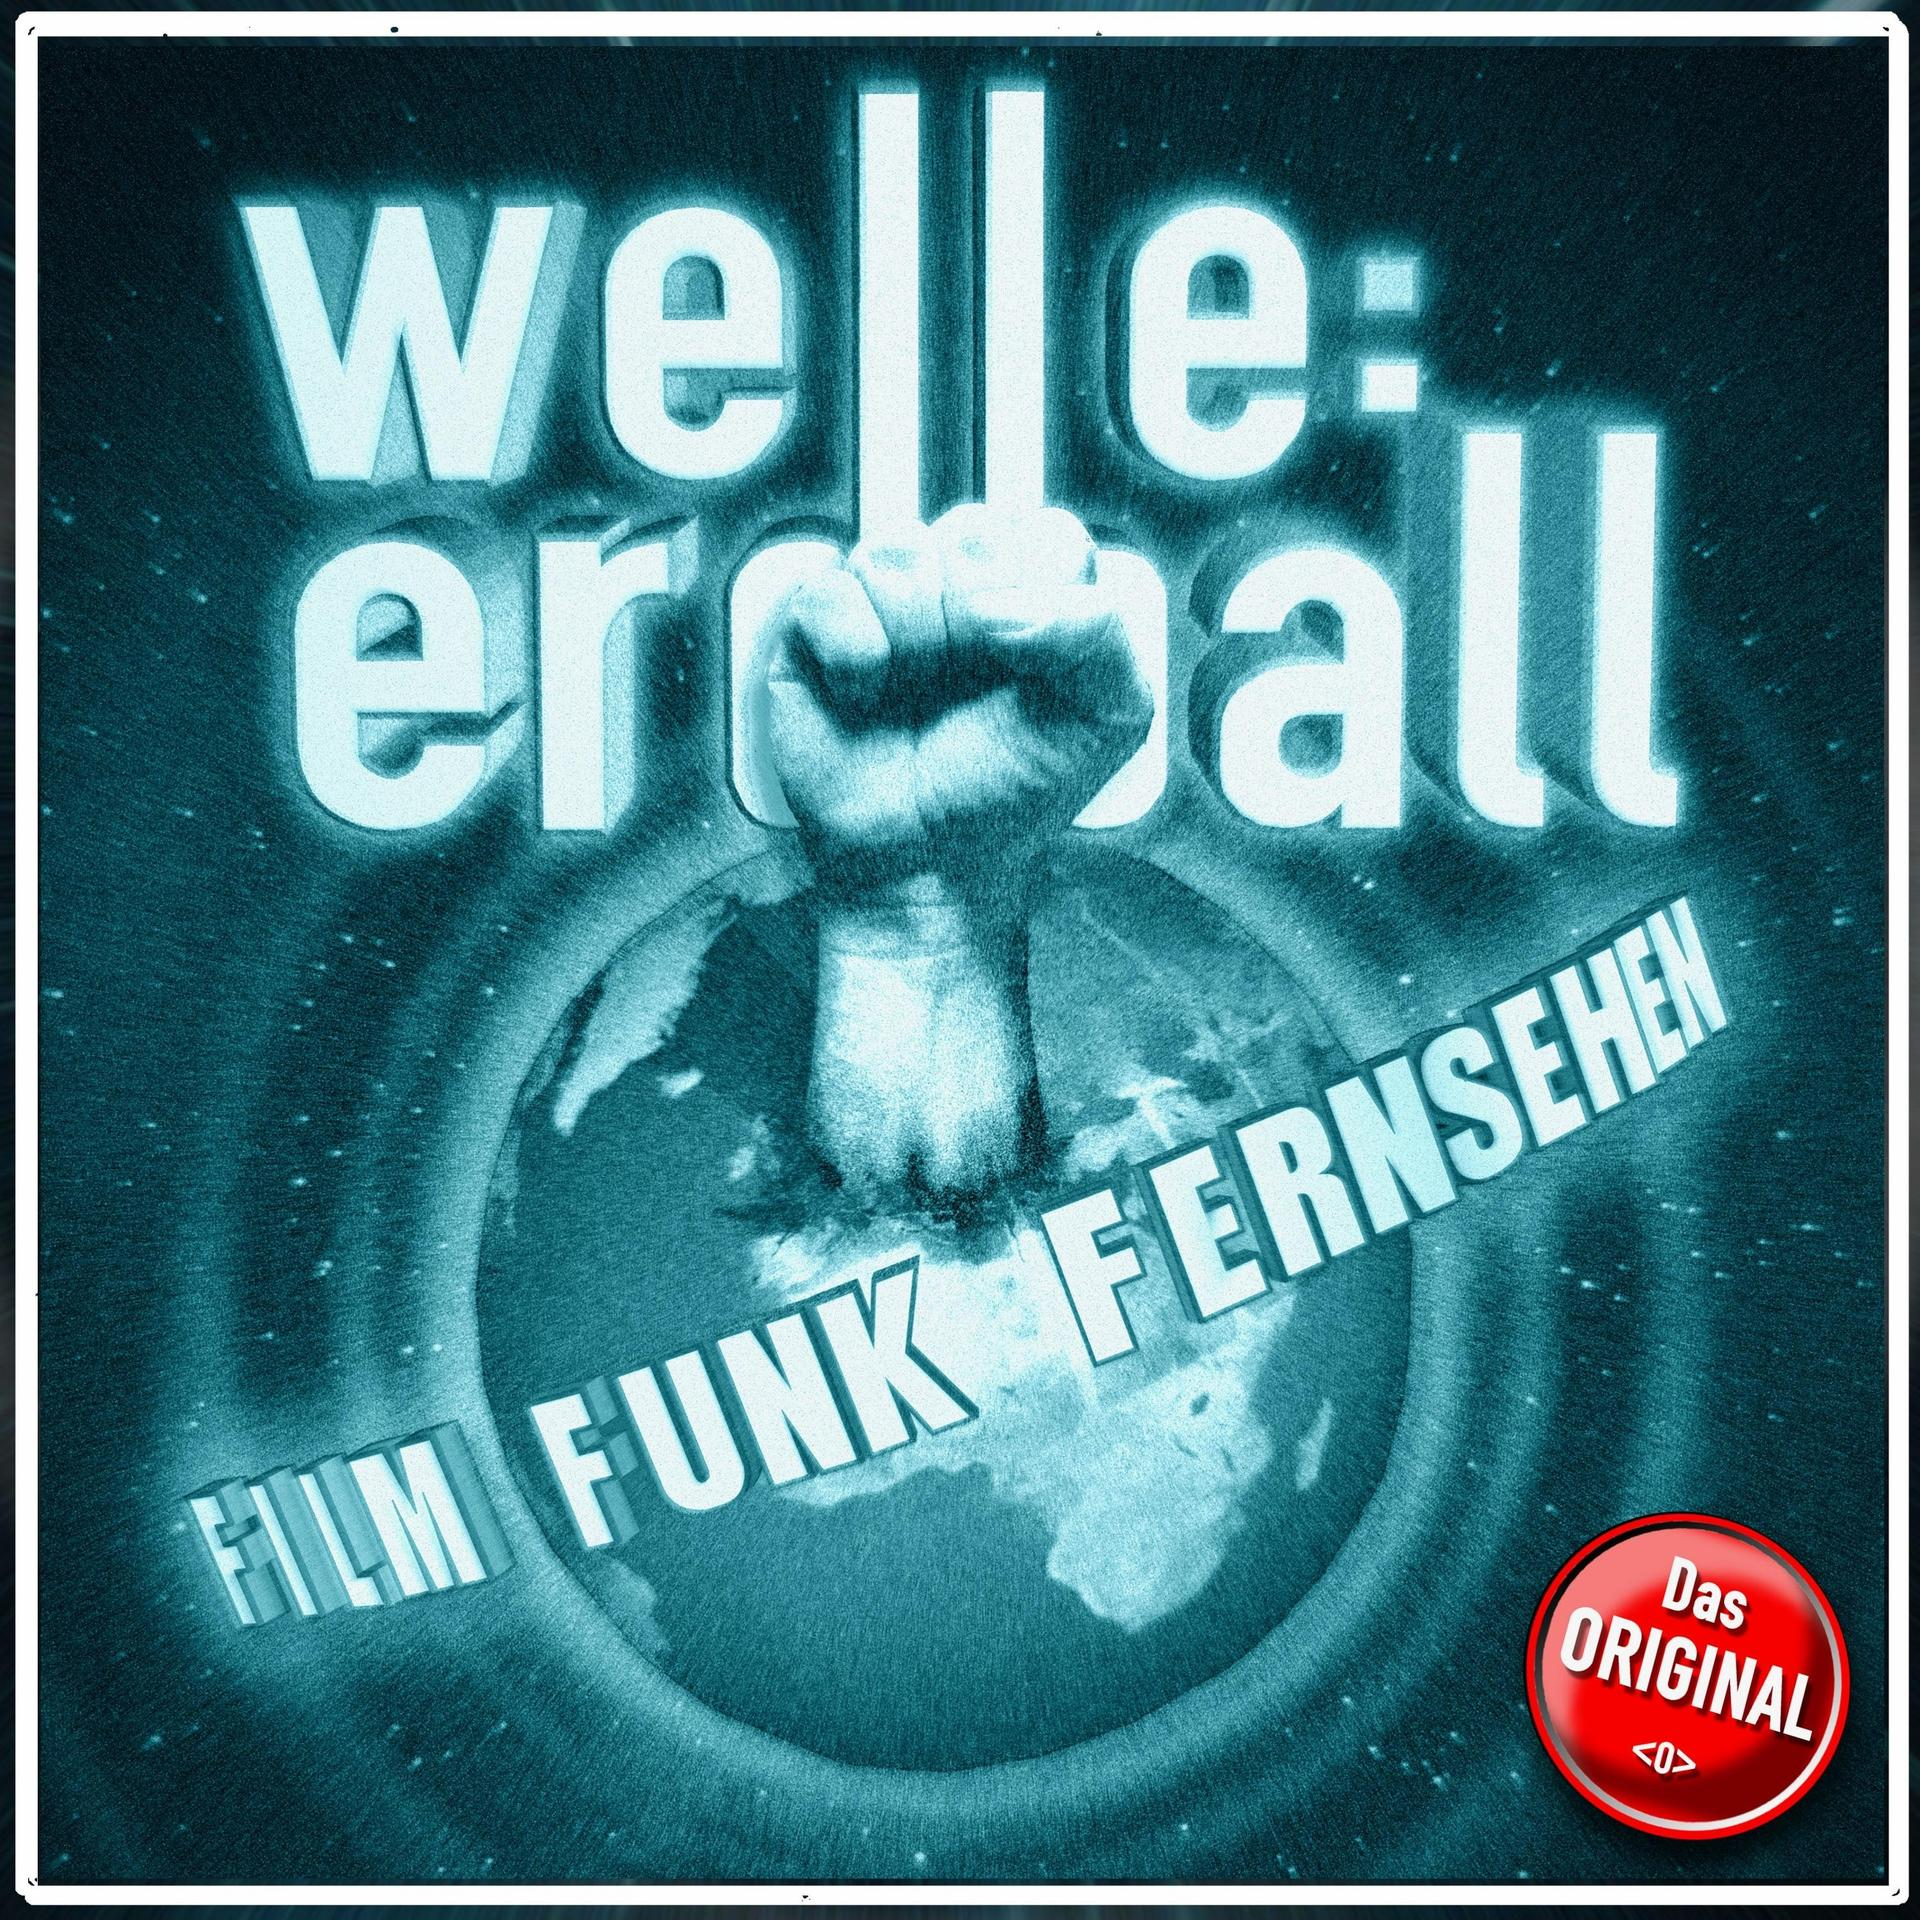 Erdball - Film,Funk Welle: (CD) und - Fernsehen